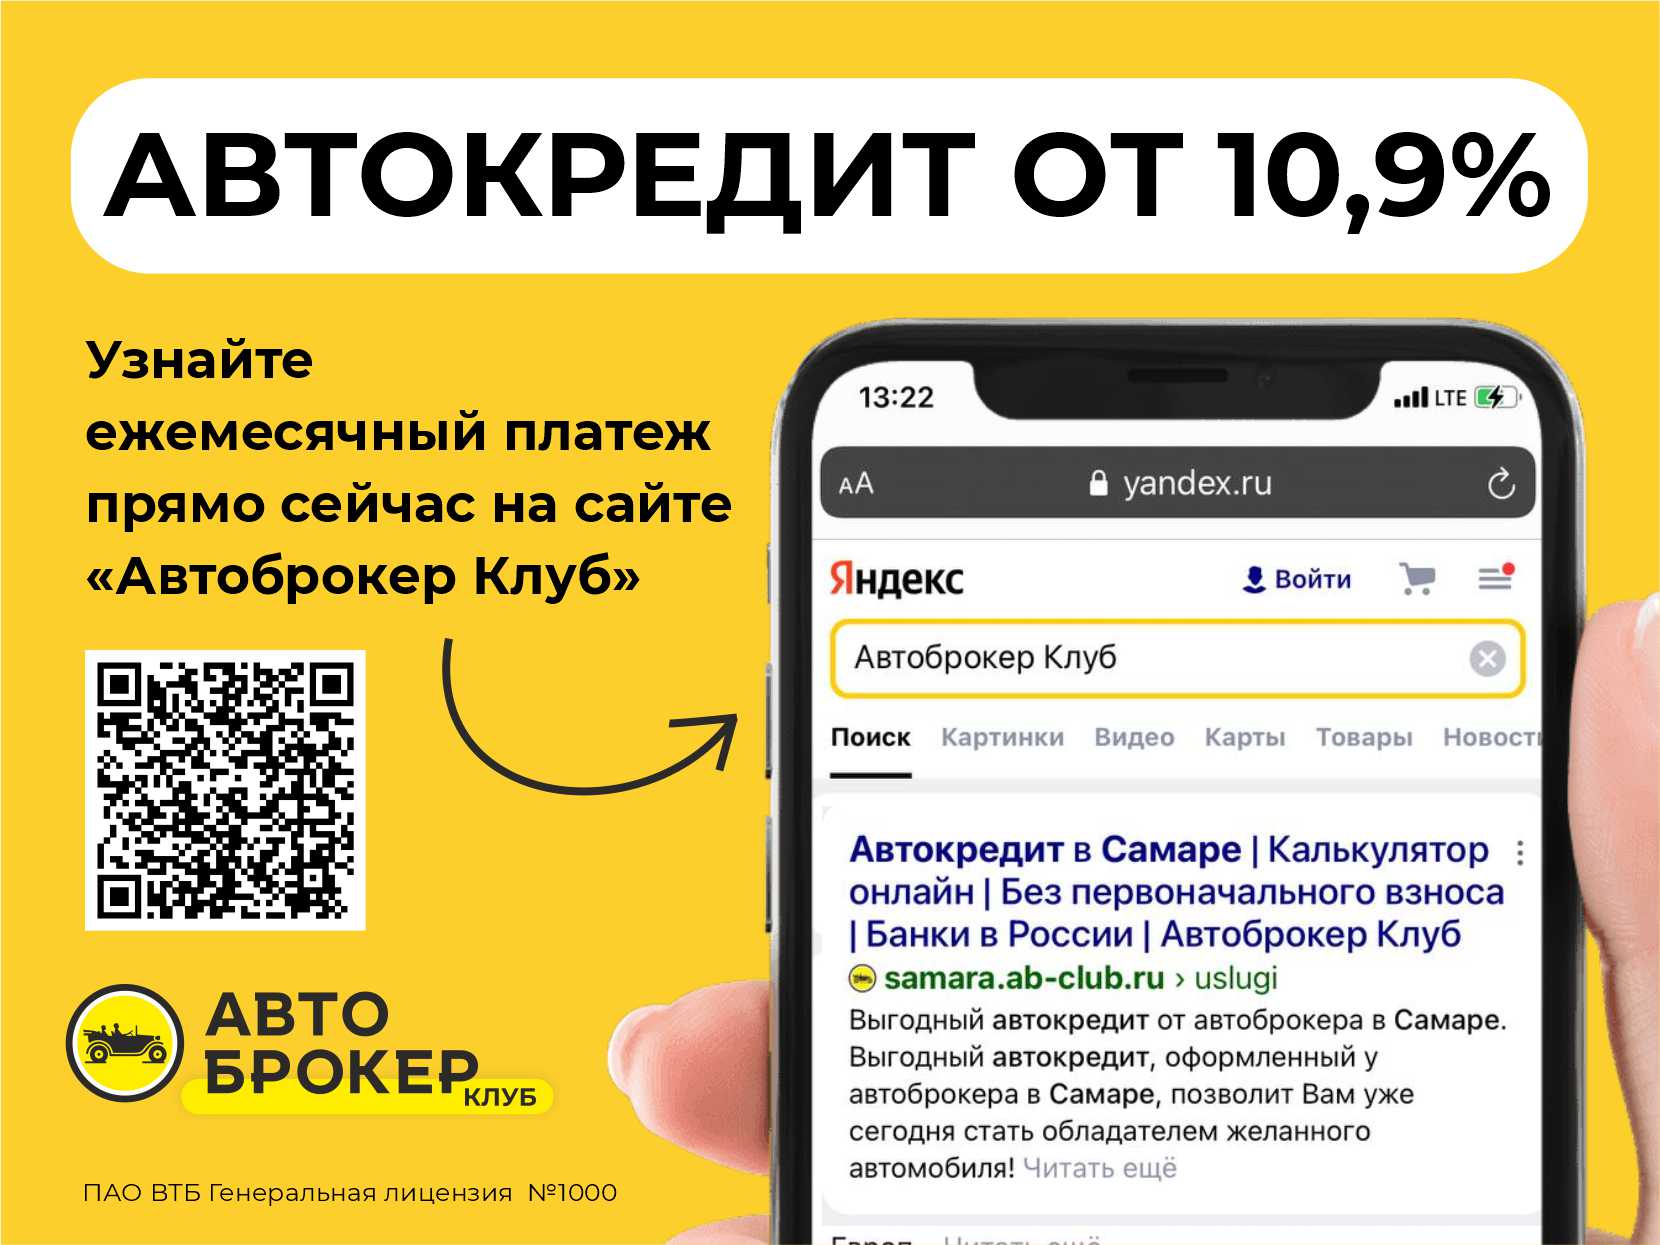 Купить б/у KIA Sportage, 2020 год, 150 л.с. в Казани